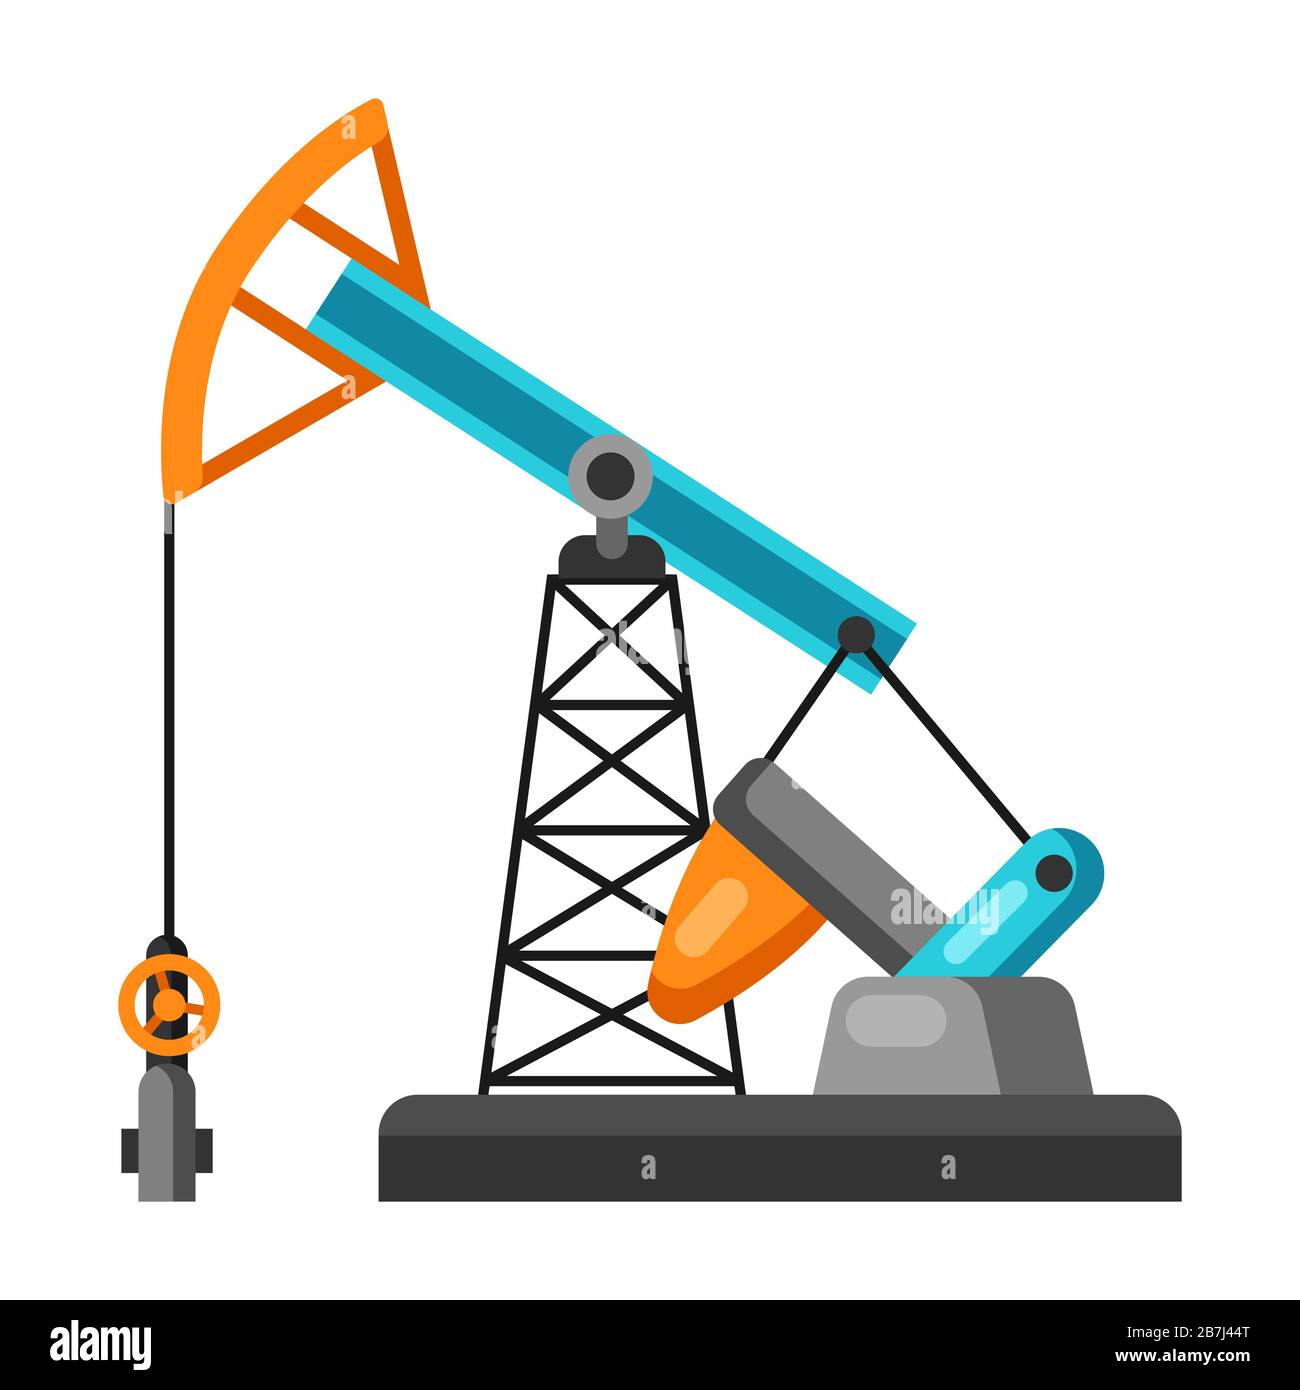 Illustration of oil pumpjack. Stock Vector